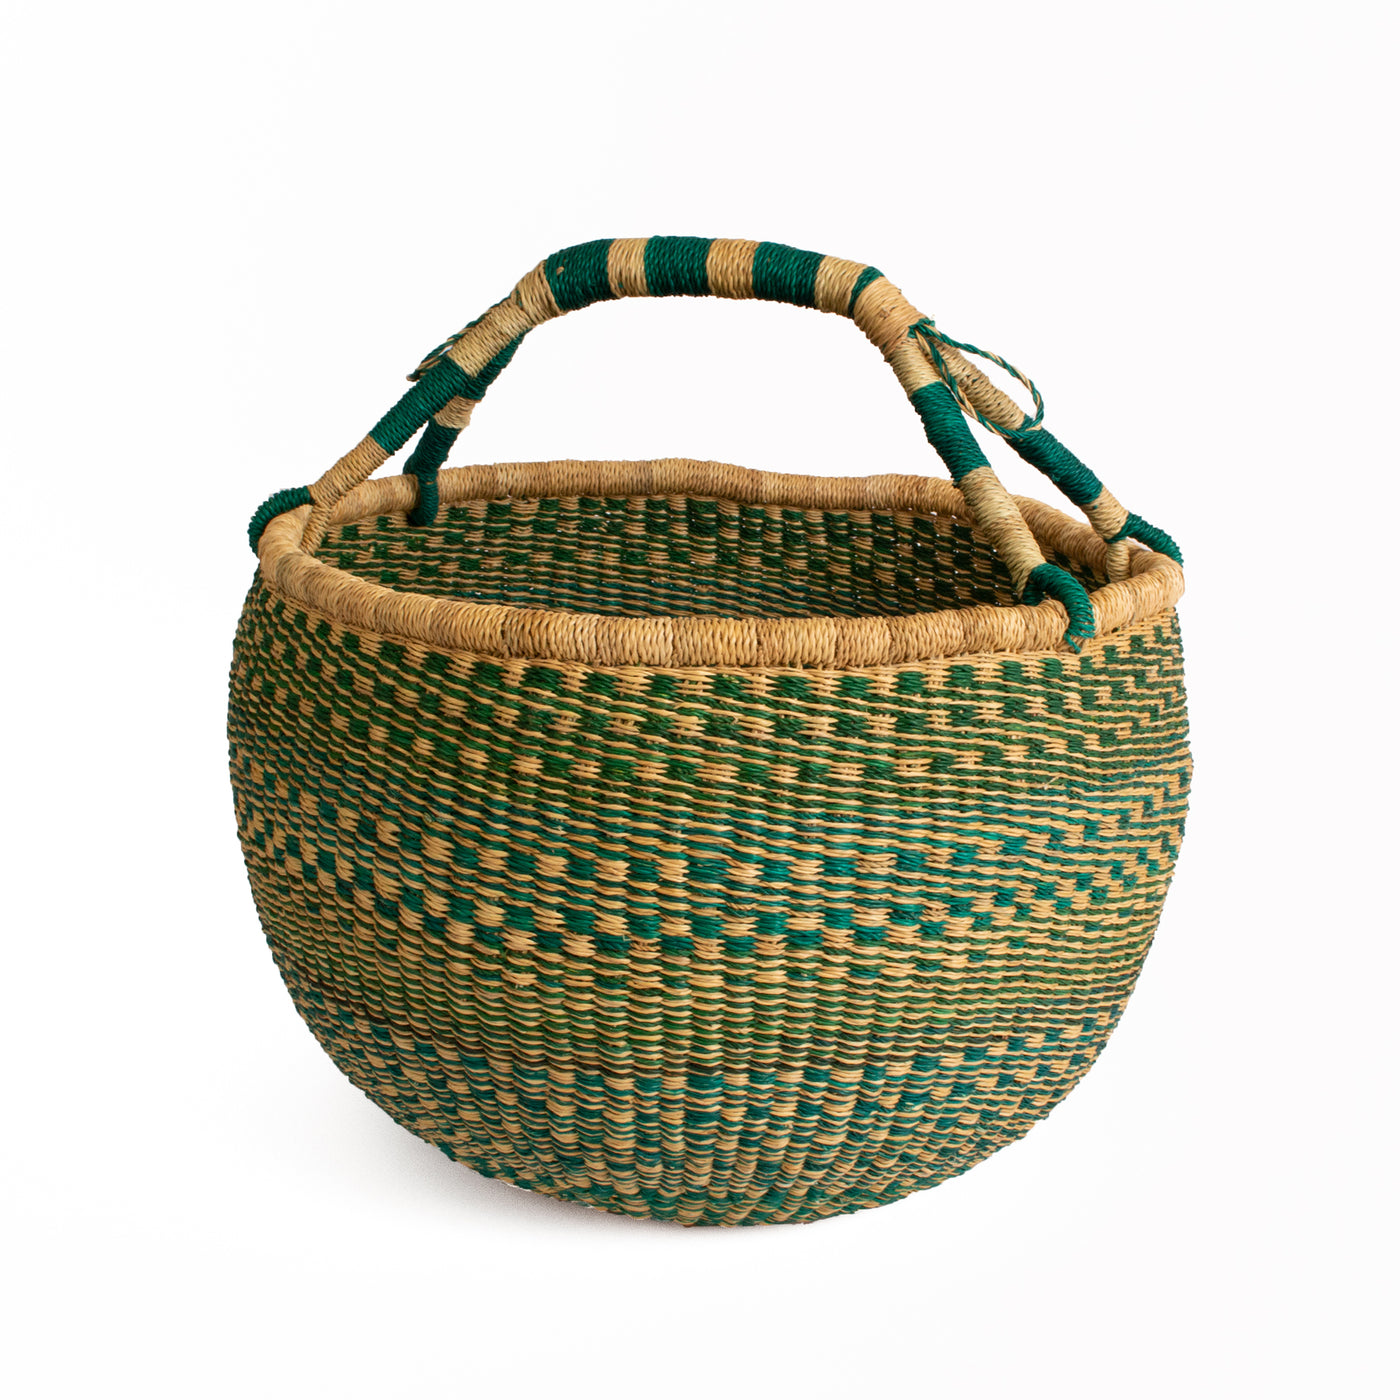 Assorted Market Basket